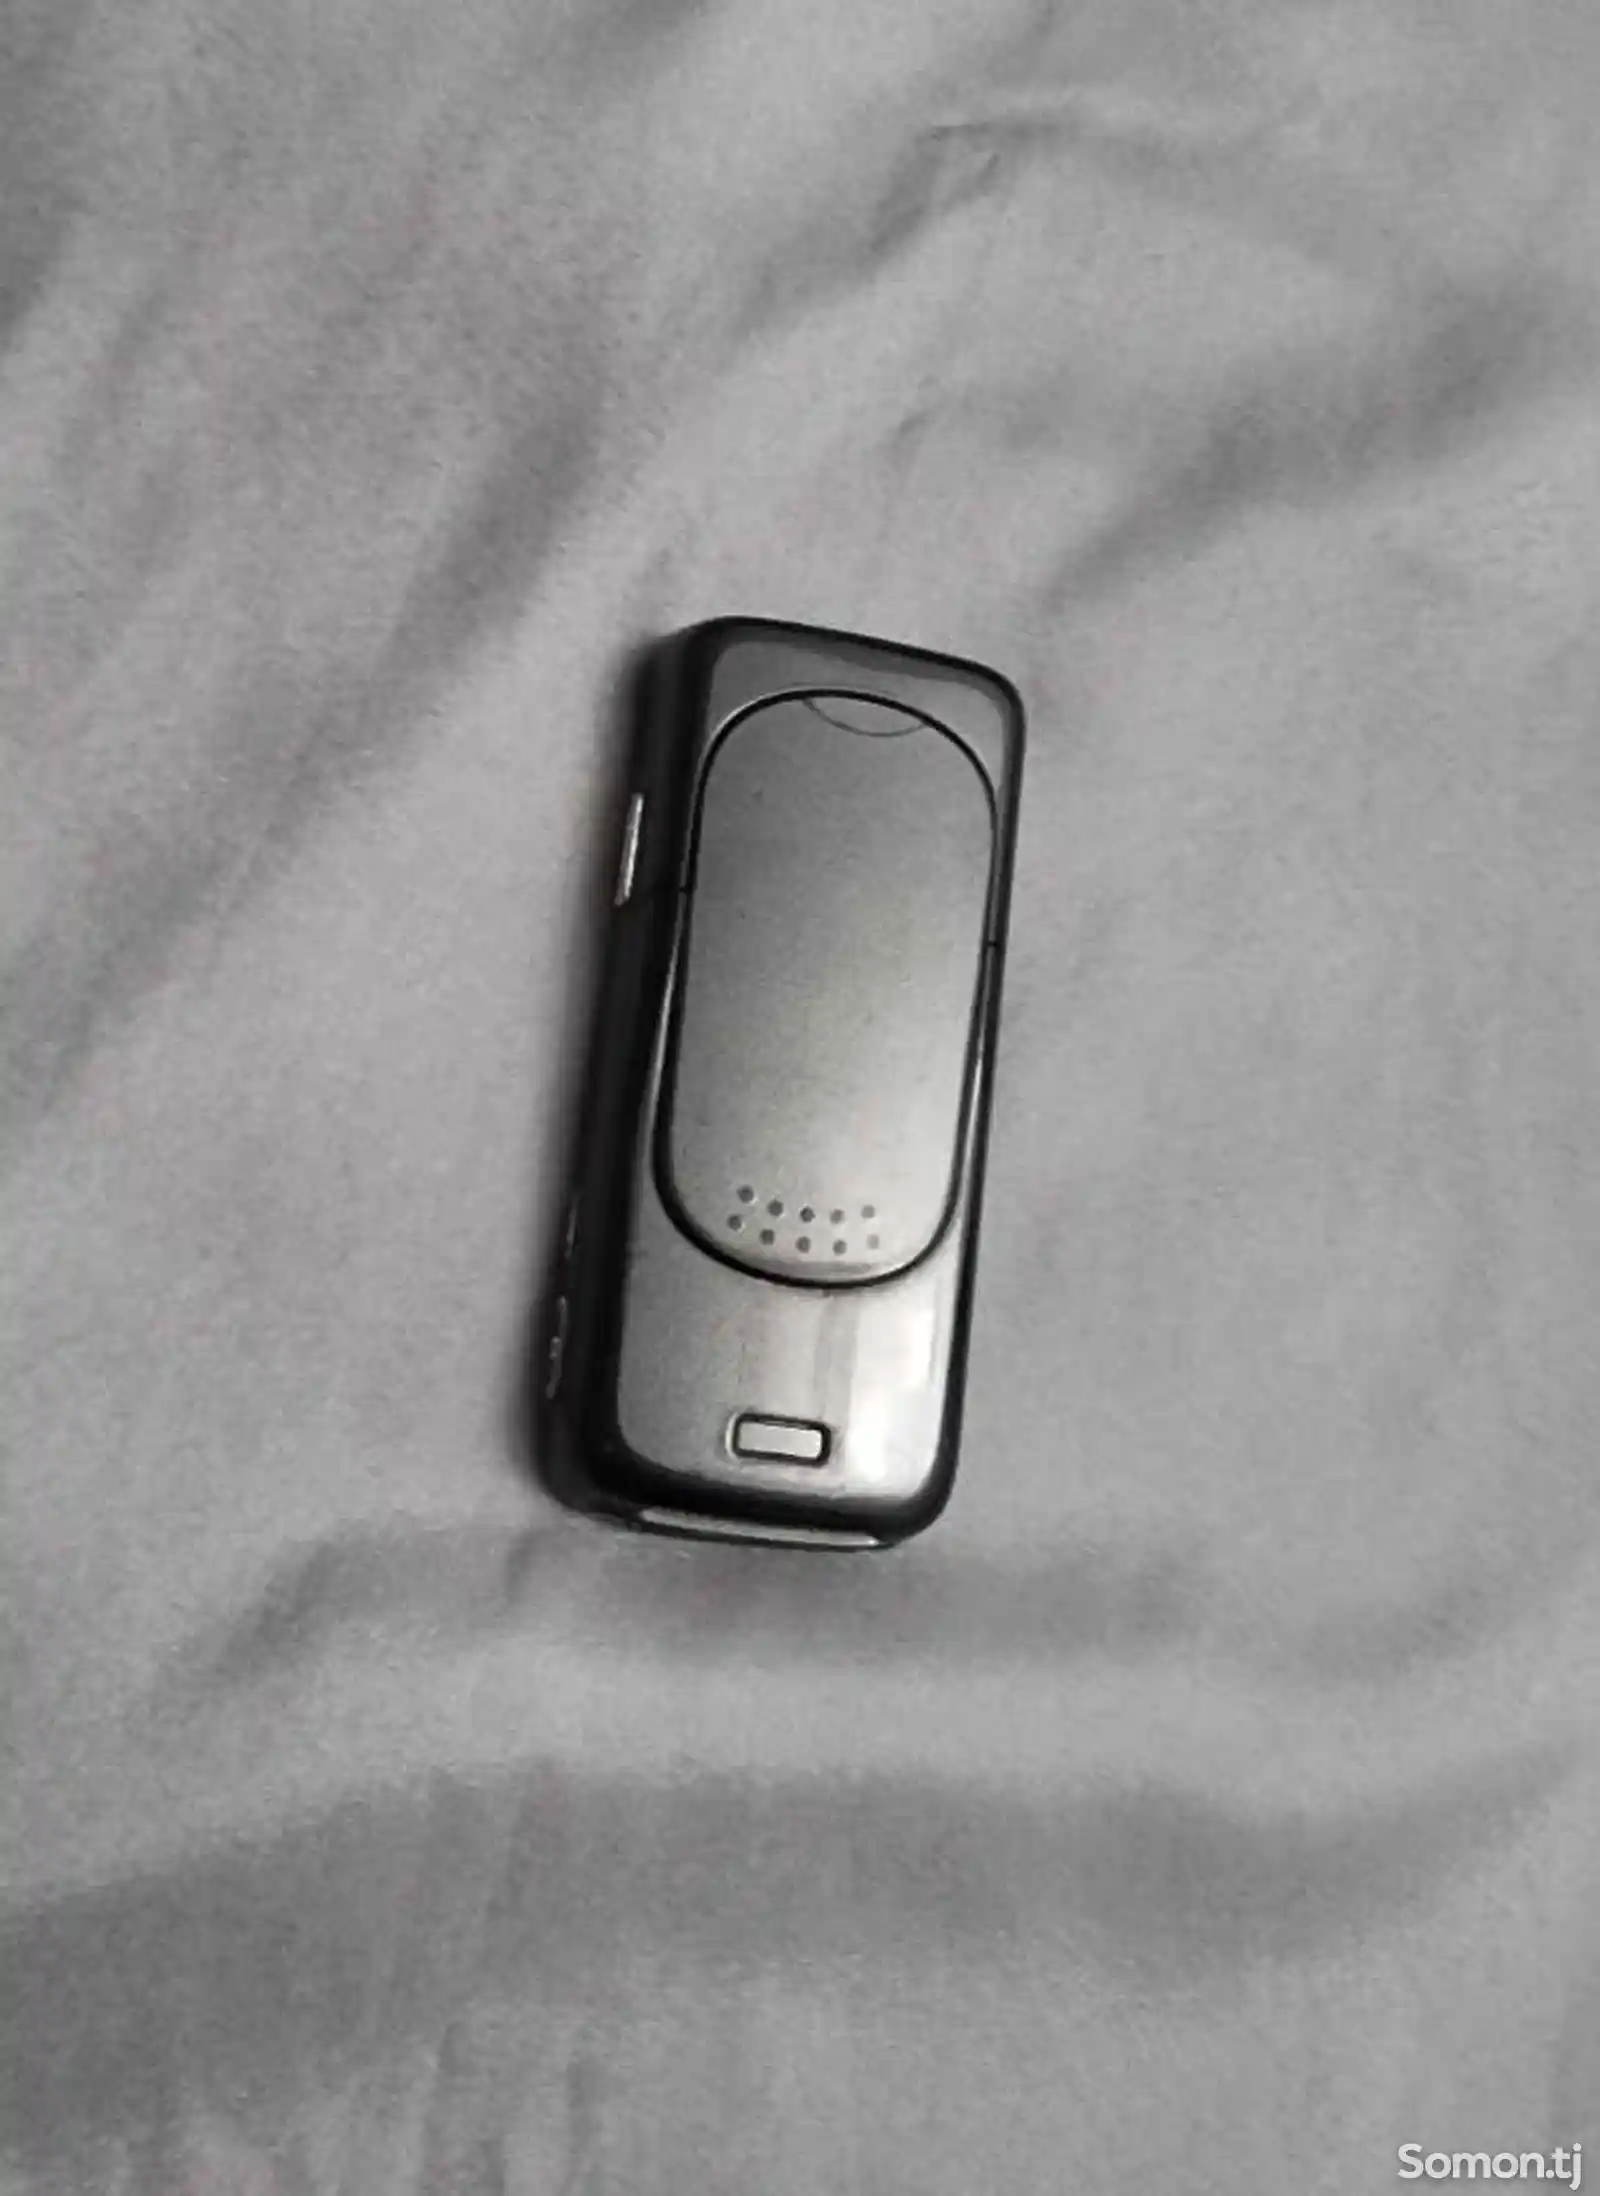 Nokia N73-4